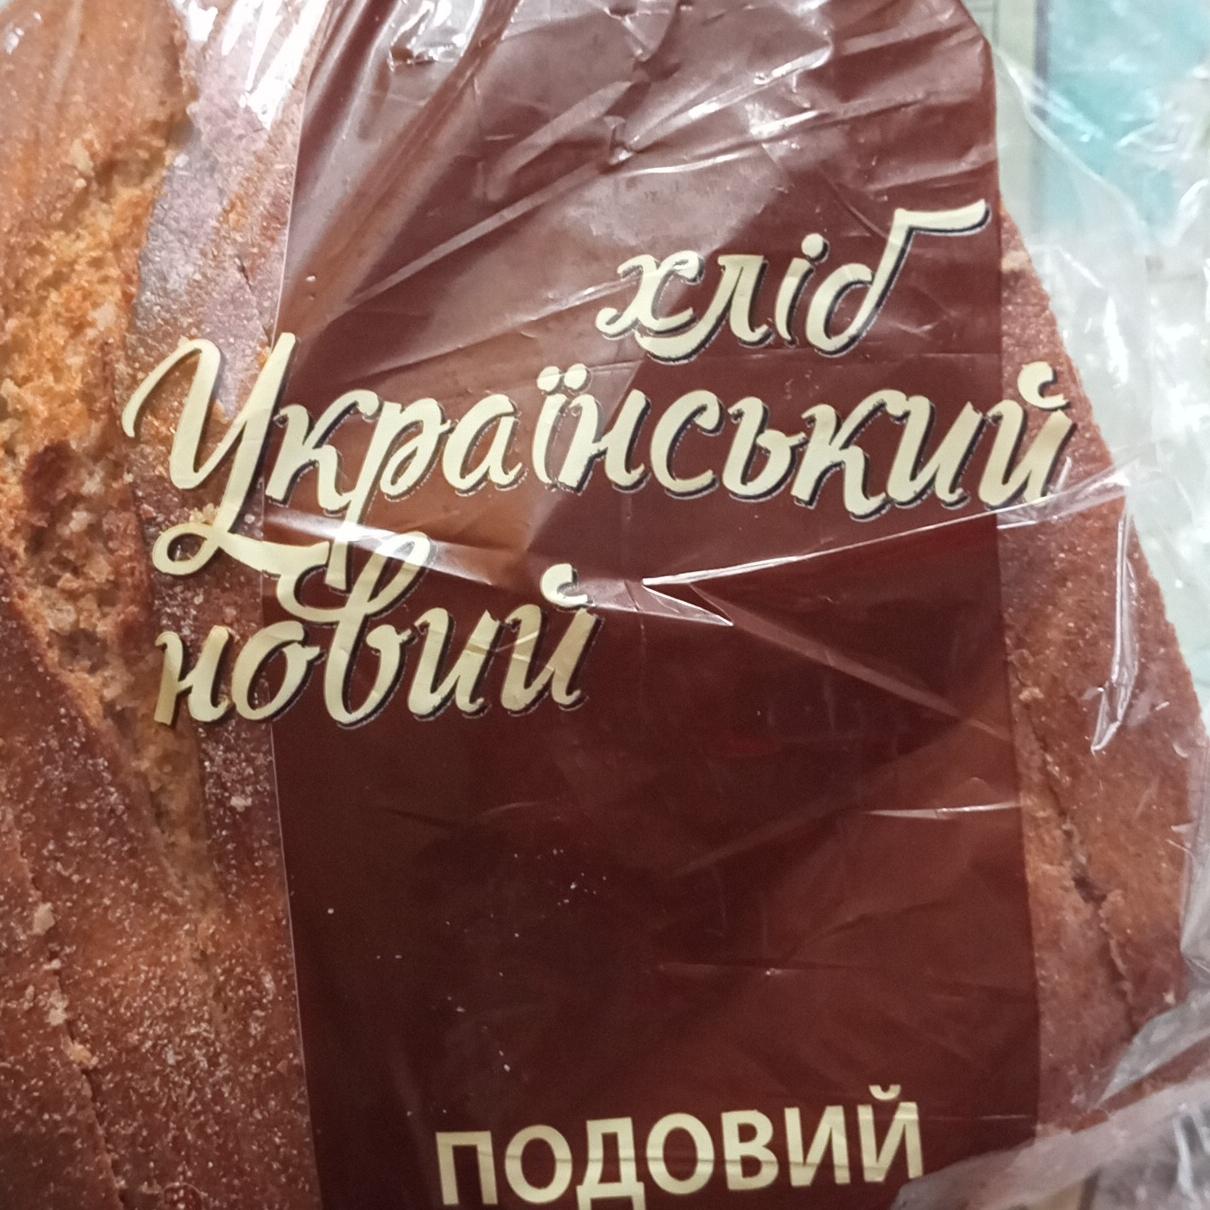 Фото - Хлеб Украинский новый Переяслав хліб